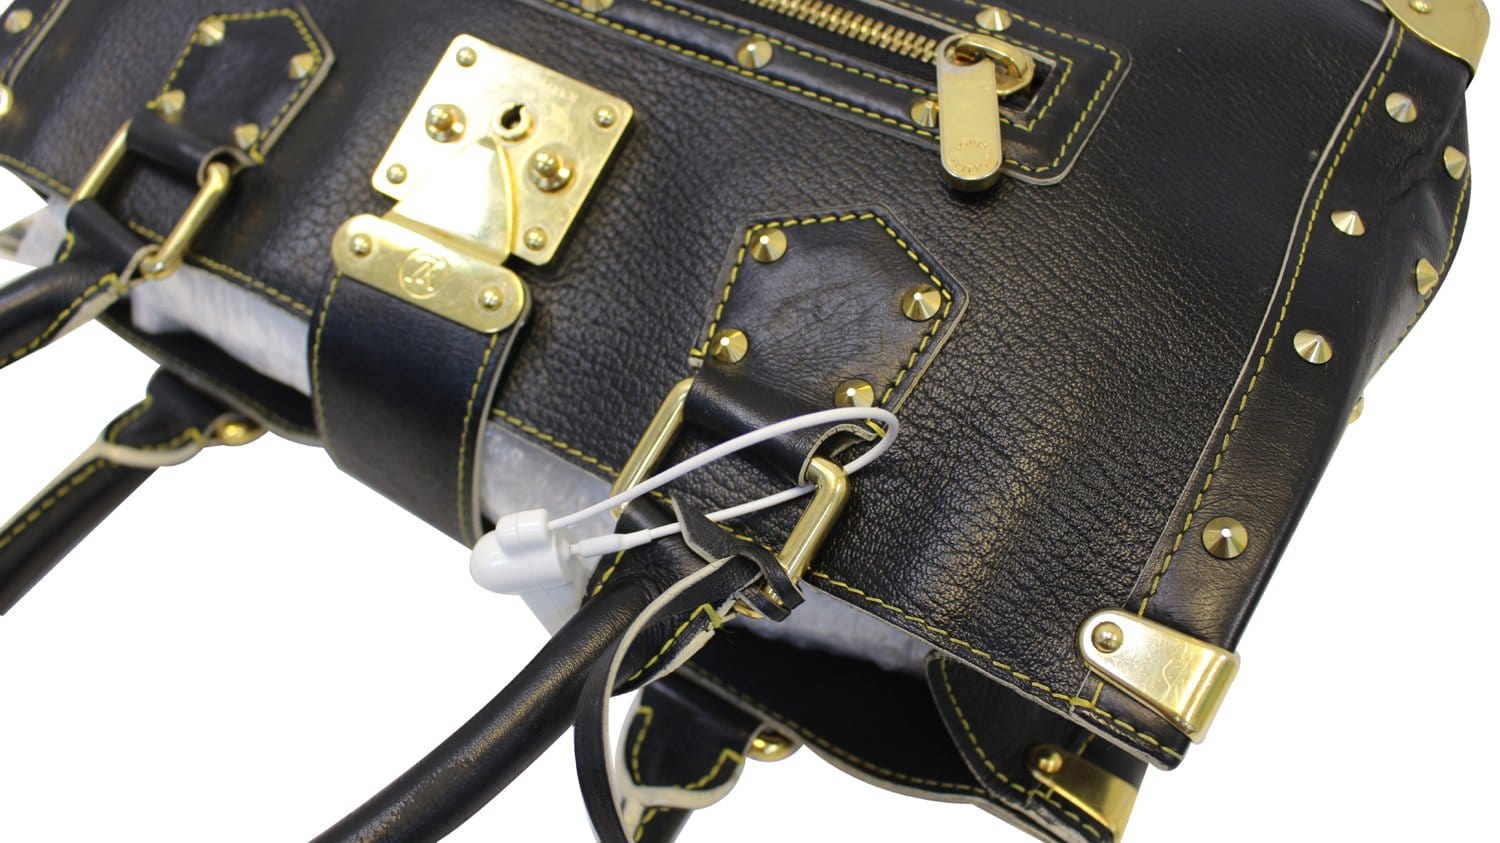 Louis Vuitton Suhali Leather Le Fabuleux Bag